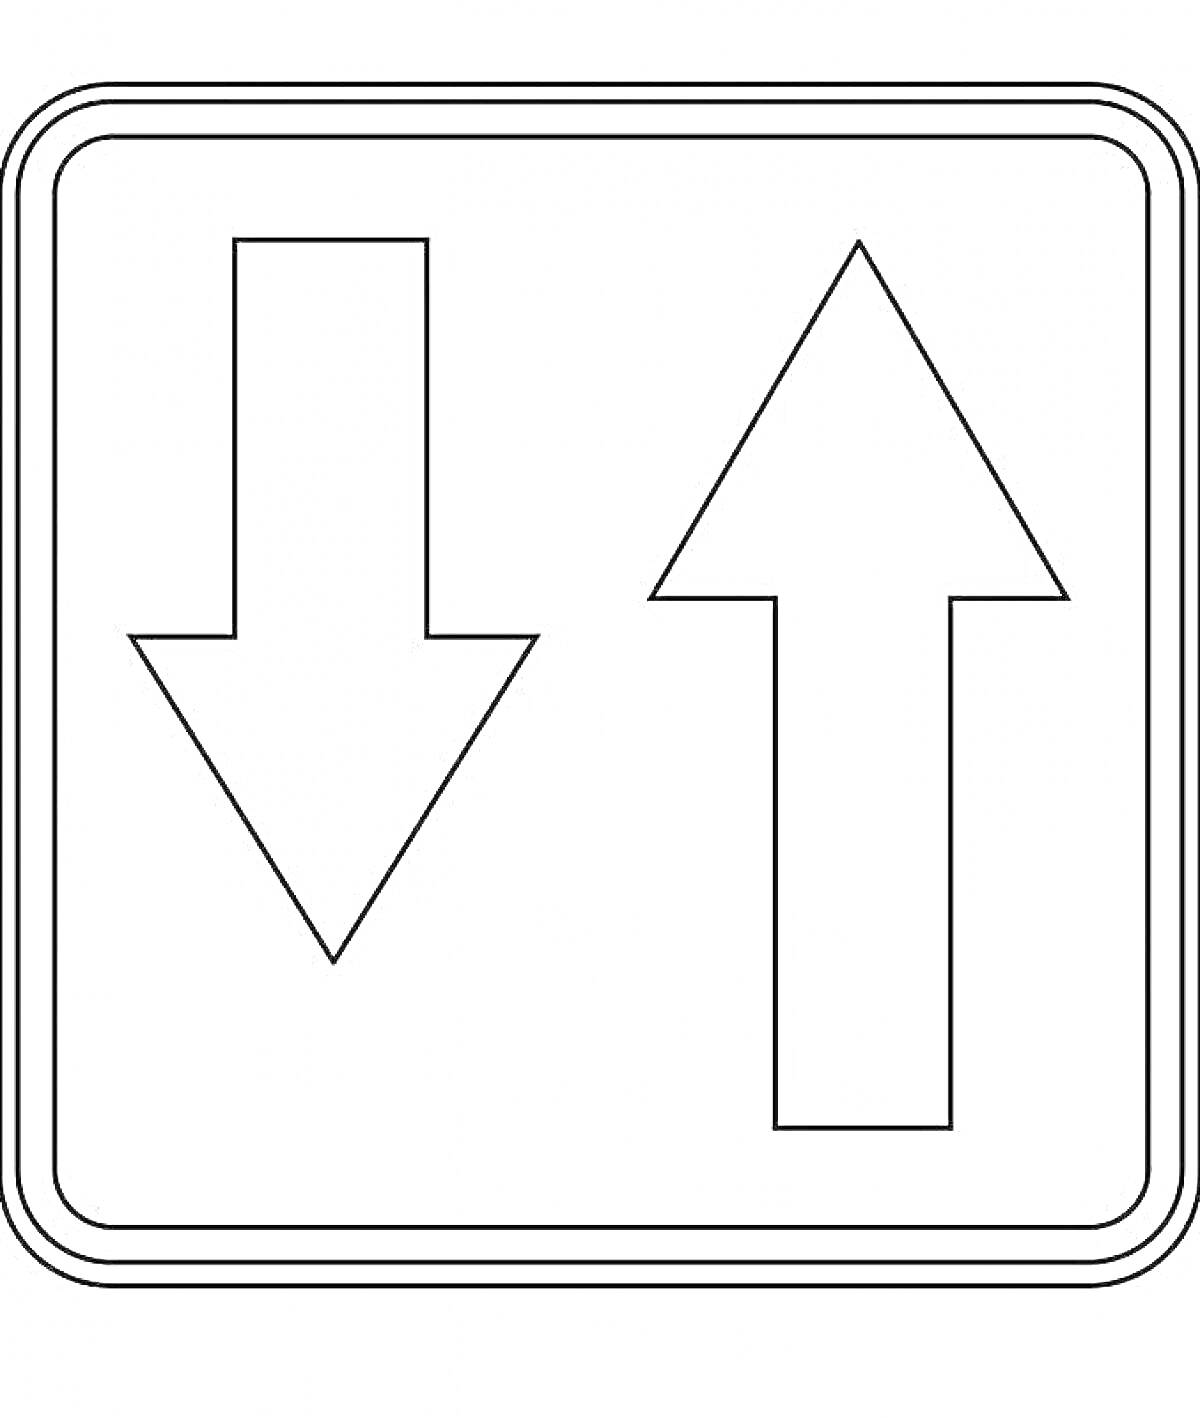 Раскраска дорожный знак с двумя стрелками, одна направлена вниз (слева), а другая направлена вверх (справа)